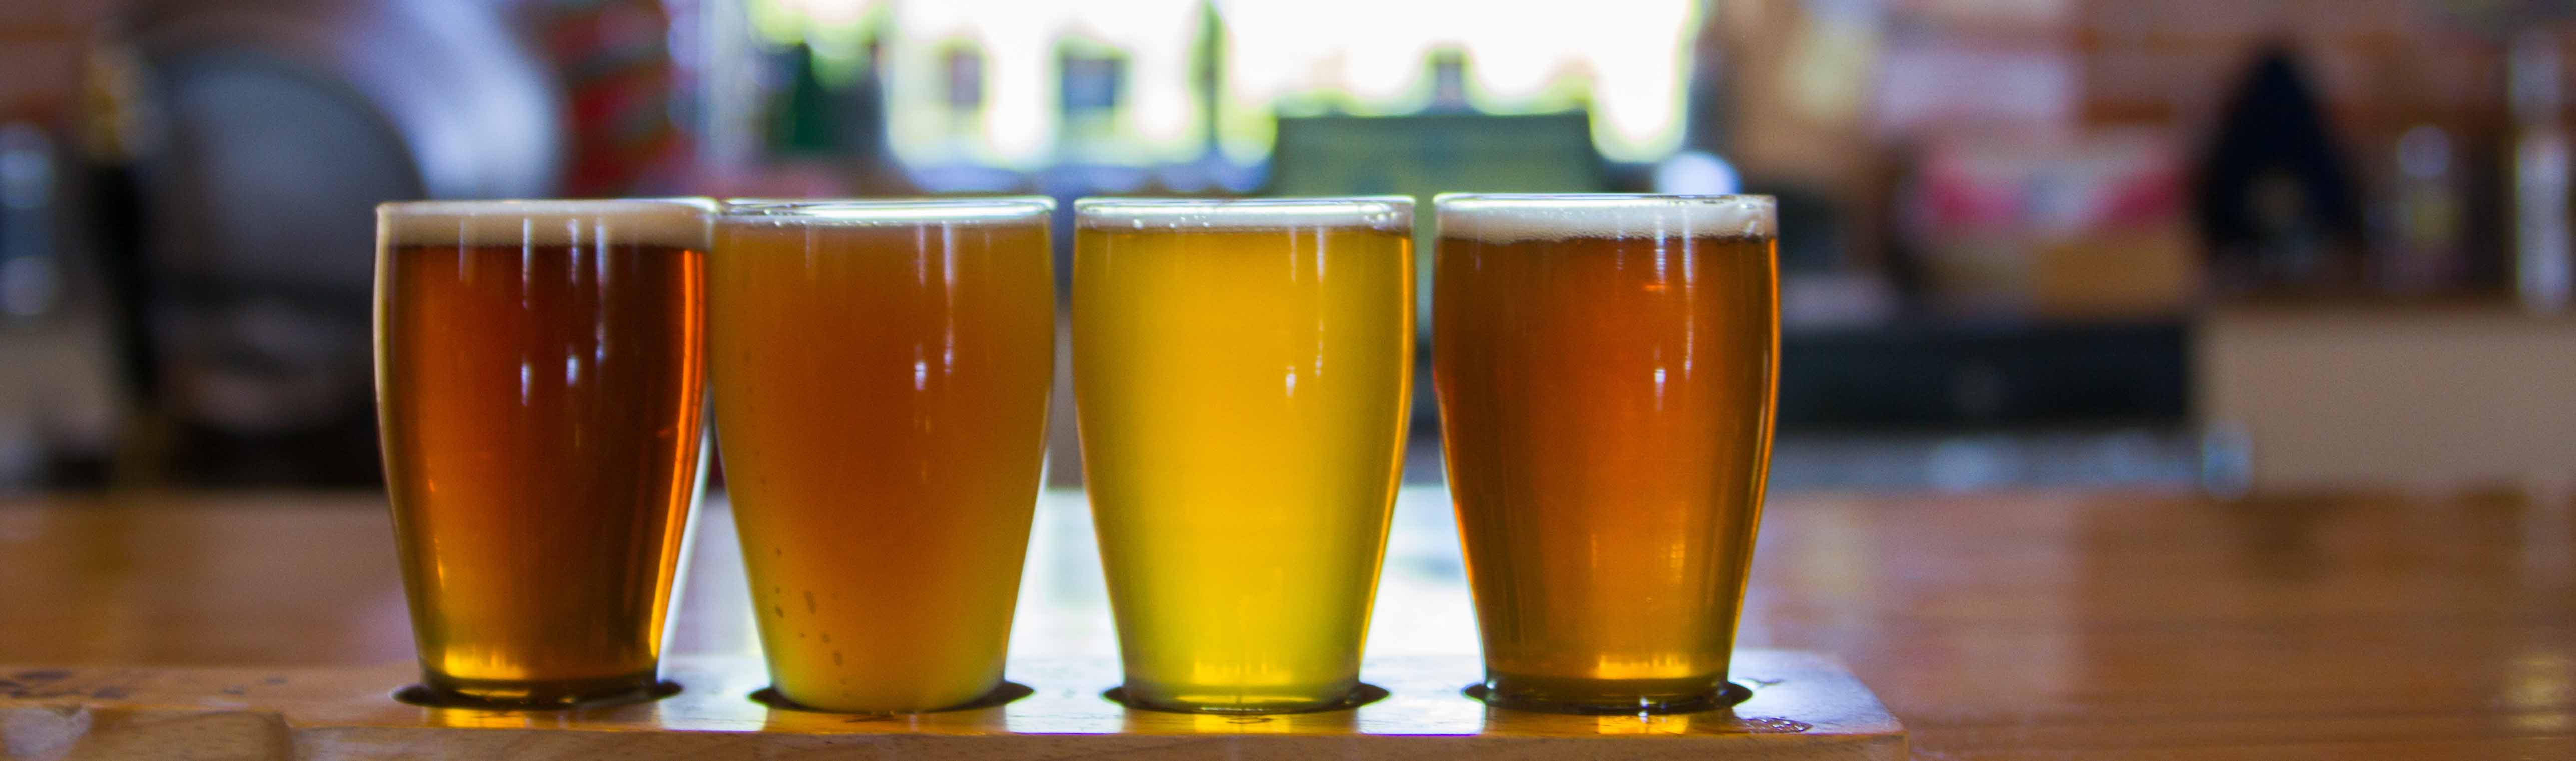 Missoula's Beer Scene Named Hidden Gem in U.S.